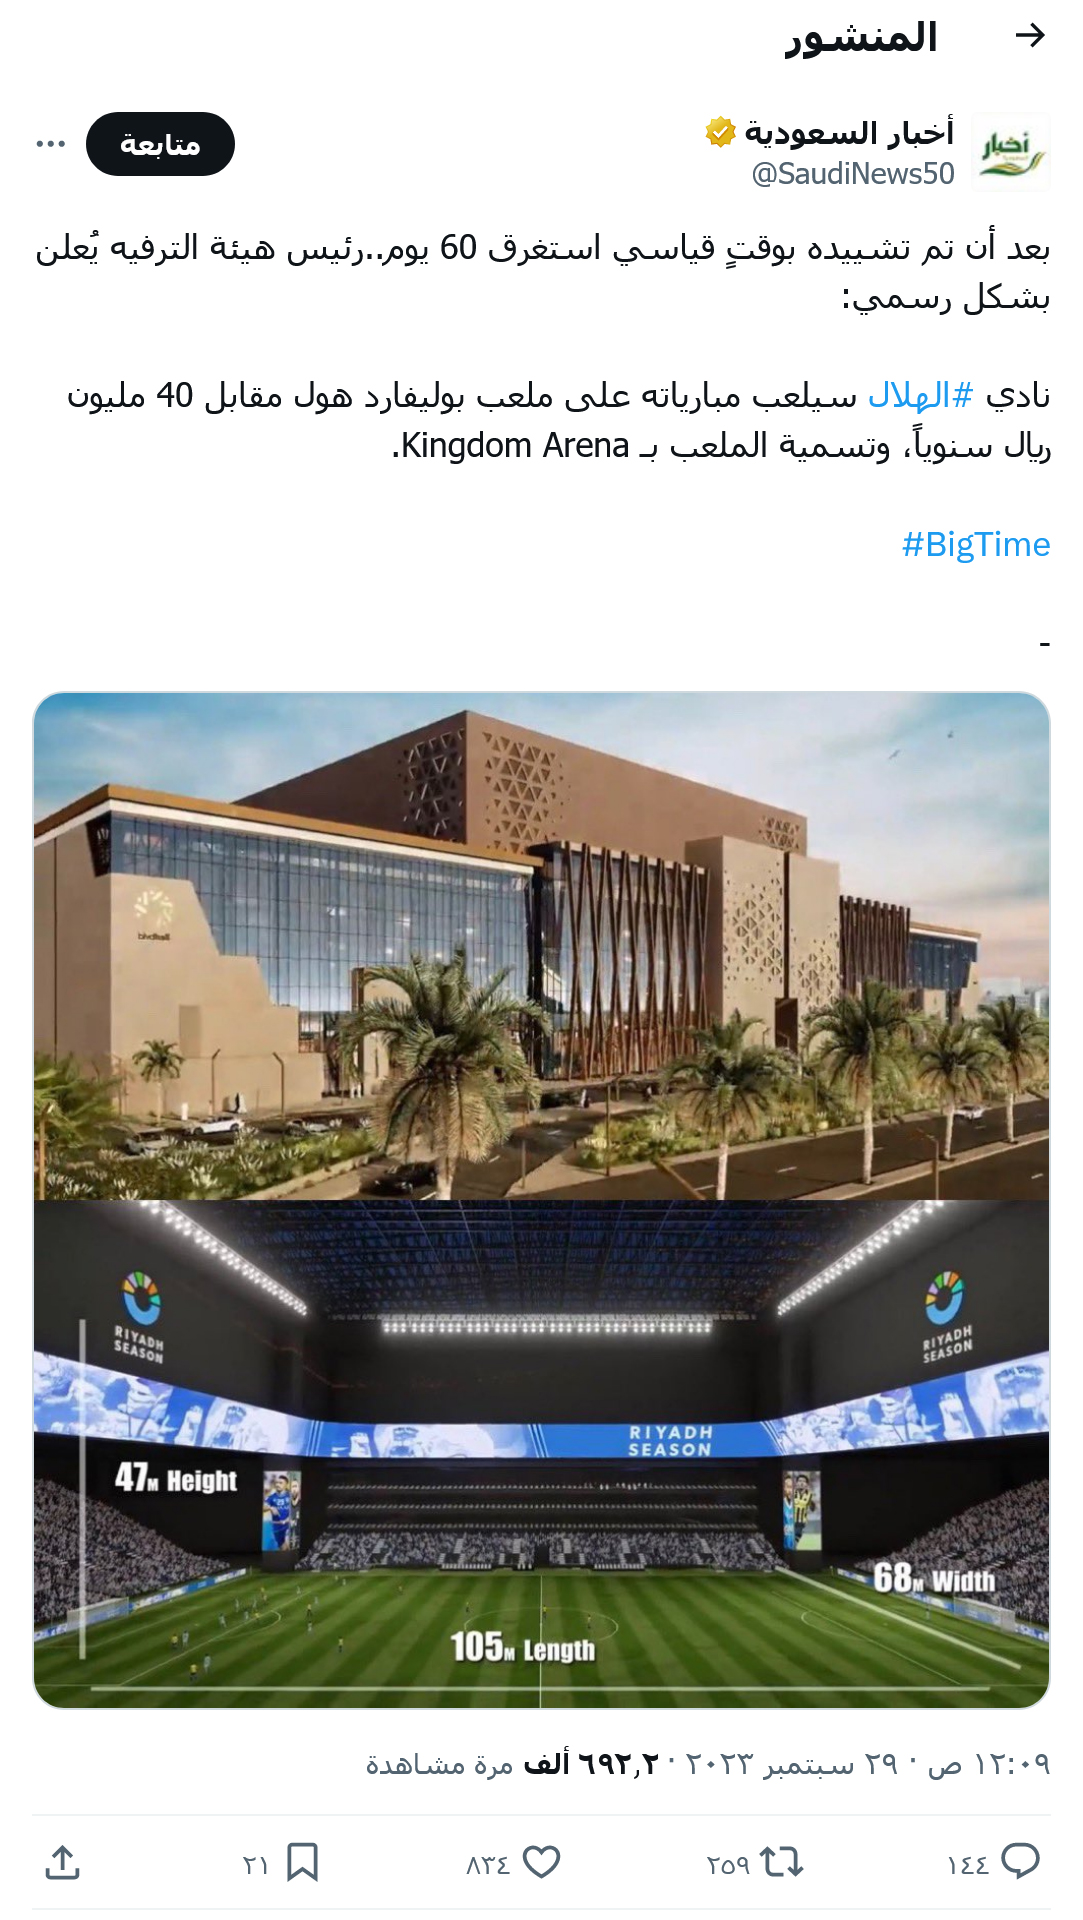 في كم يوم بني ملعب kingdom arena؟ كم استغرق بناء ملعب المملكة أرينا في السعودية؟